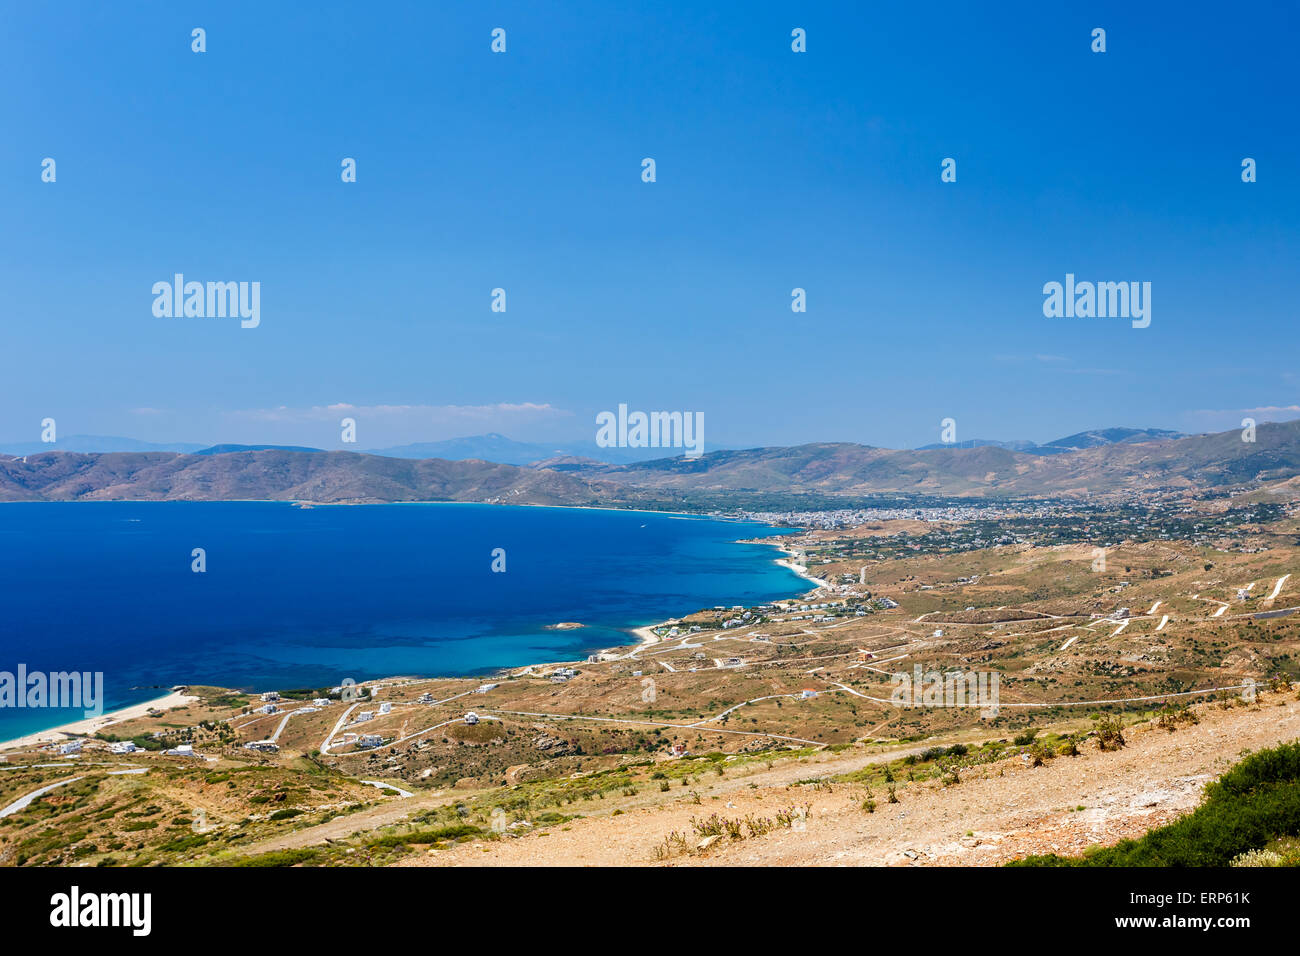 Karystos ciudad paisaje contra el azul del cielo y del mar, Evia, Grecia Foto de stock